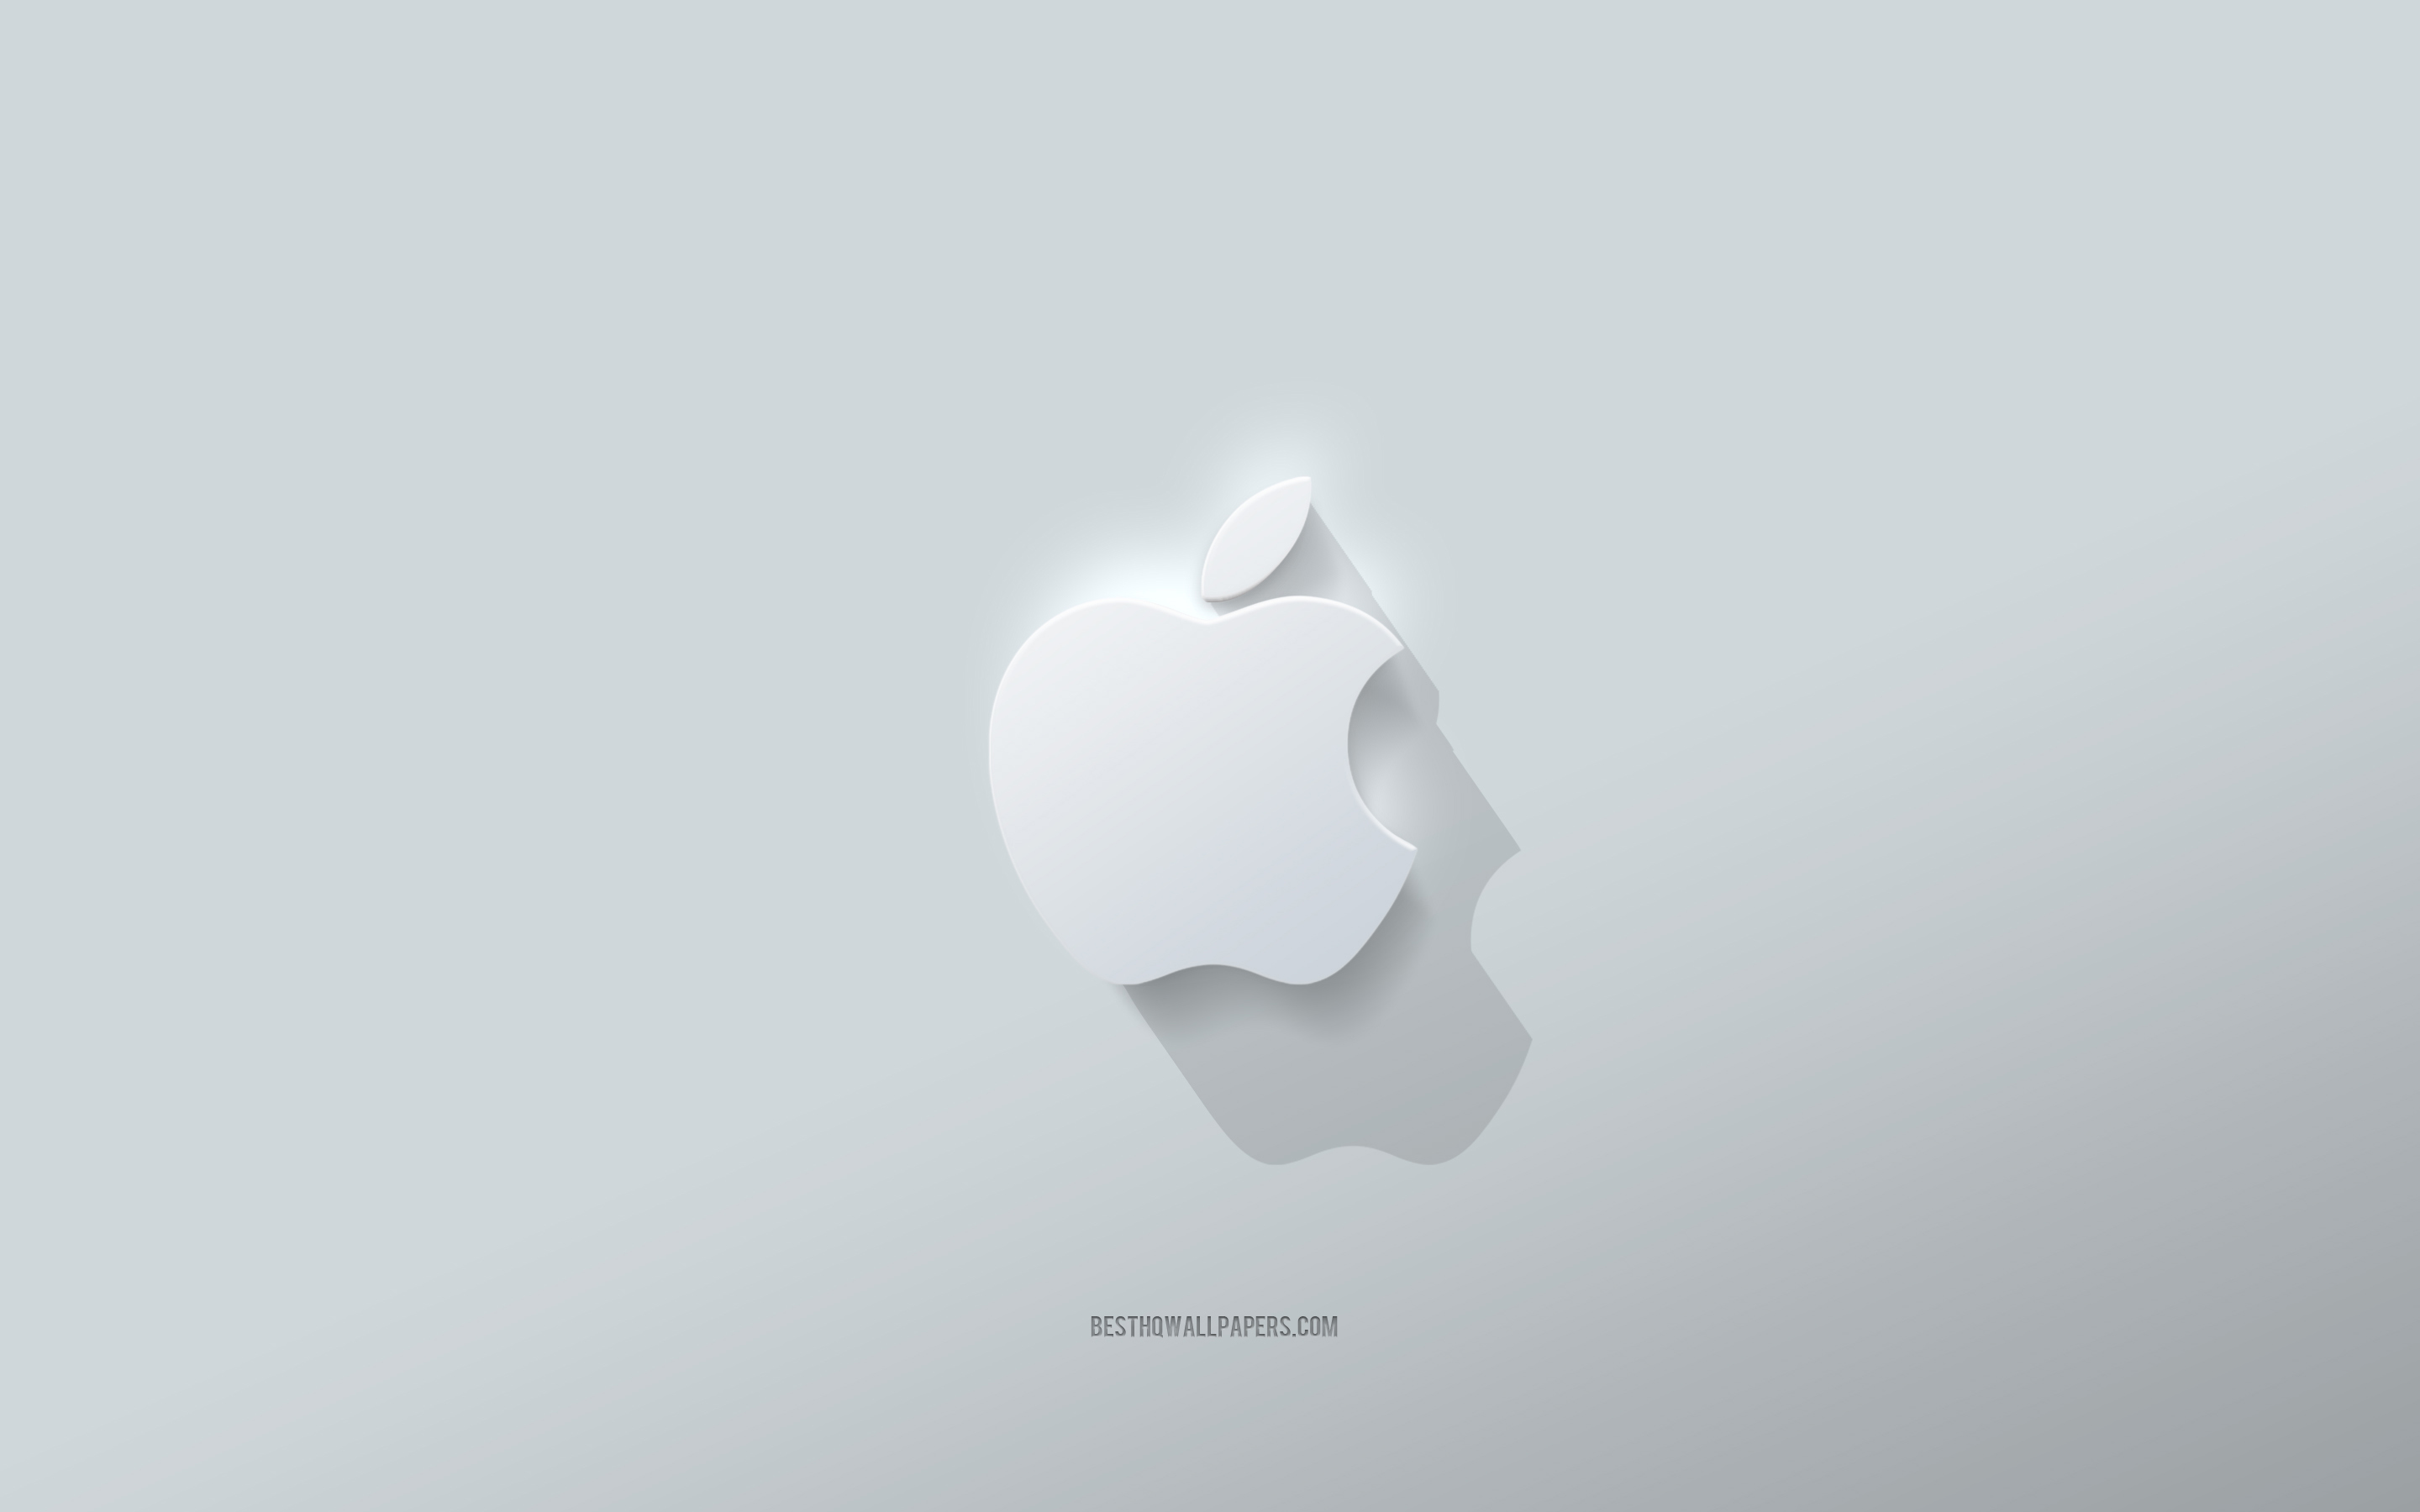 ダウンロード画像 アップルのロゴ 白背景 アップルの3dロゴ 3dアート りんご 3dアップルエンブレム クリエイティブアート アップルエンブレム 画面の解像度 x1800 壁紙デスクトップ上